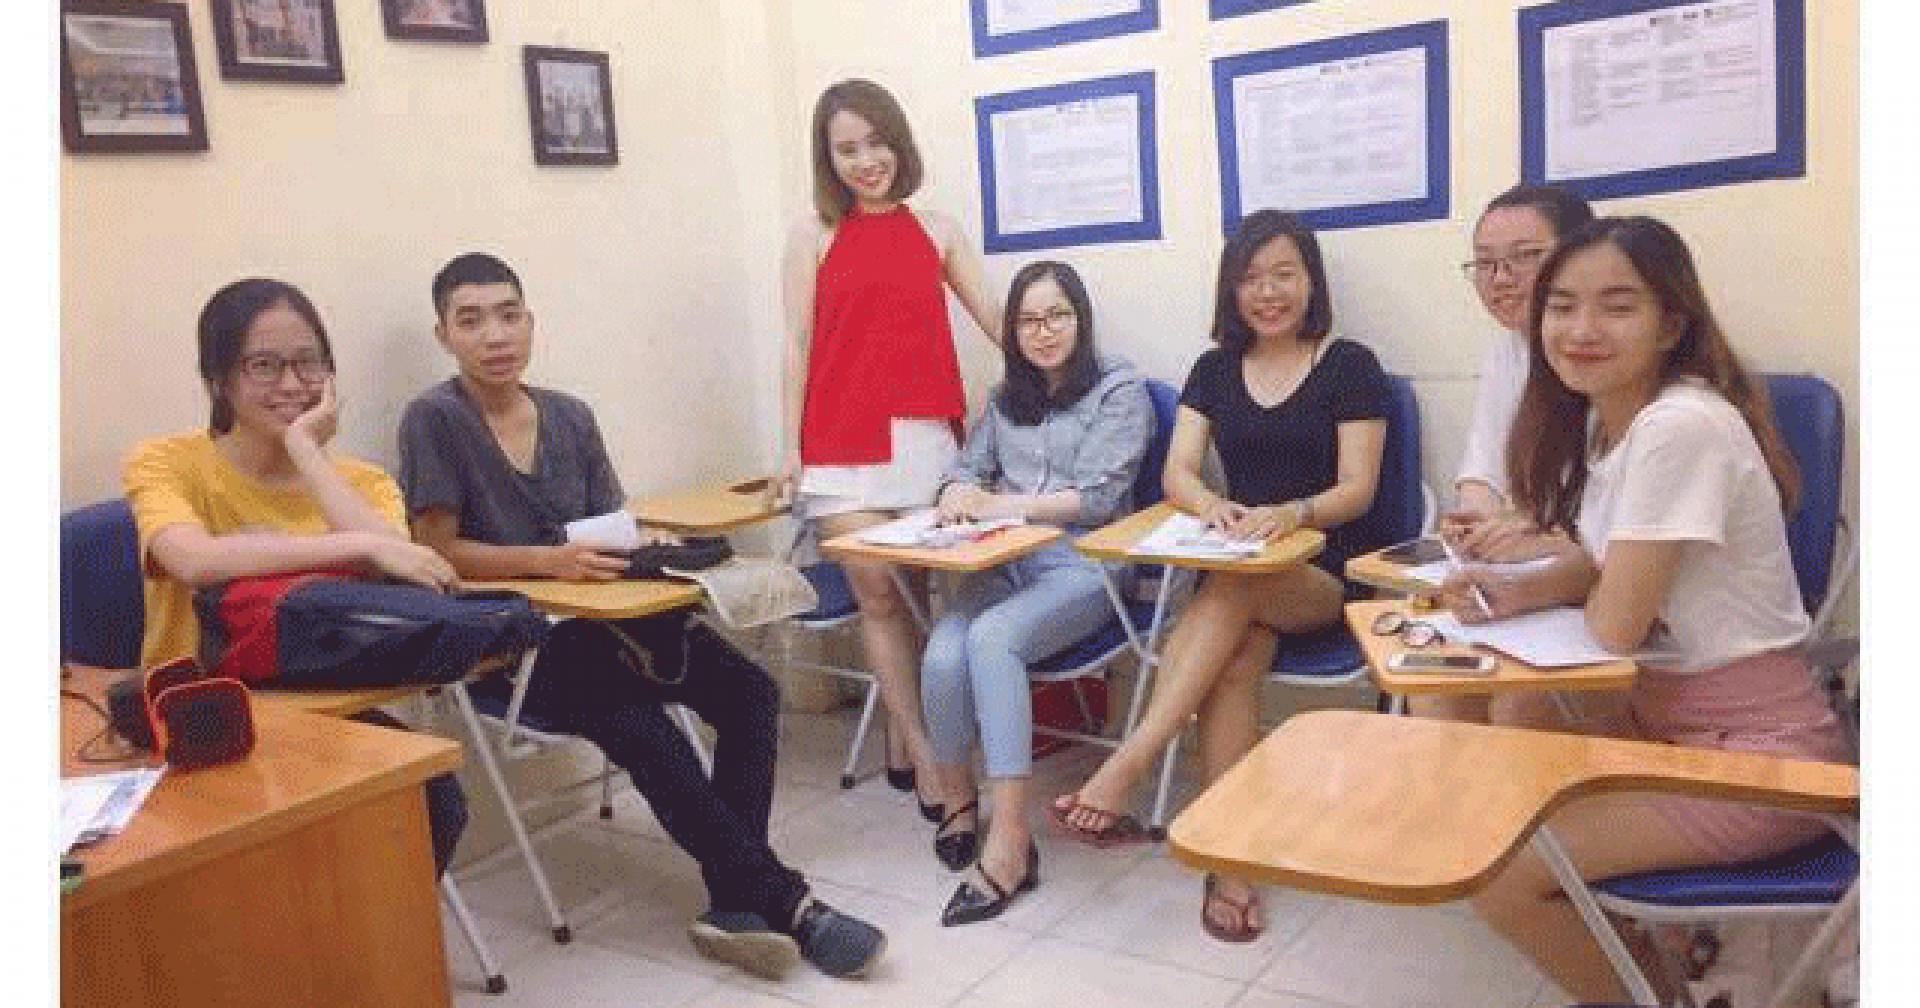 Tiết lộ mức học phí ưu đãi tại Trung tâm Prosource Việt Nam 2017